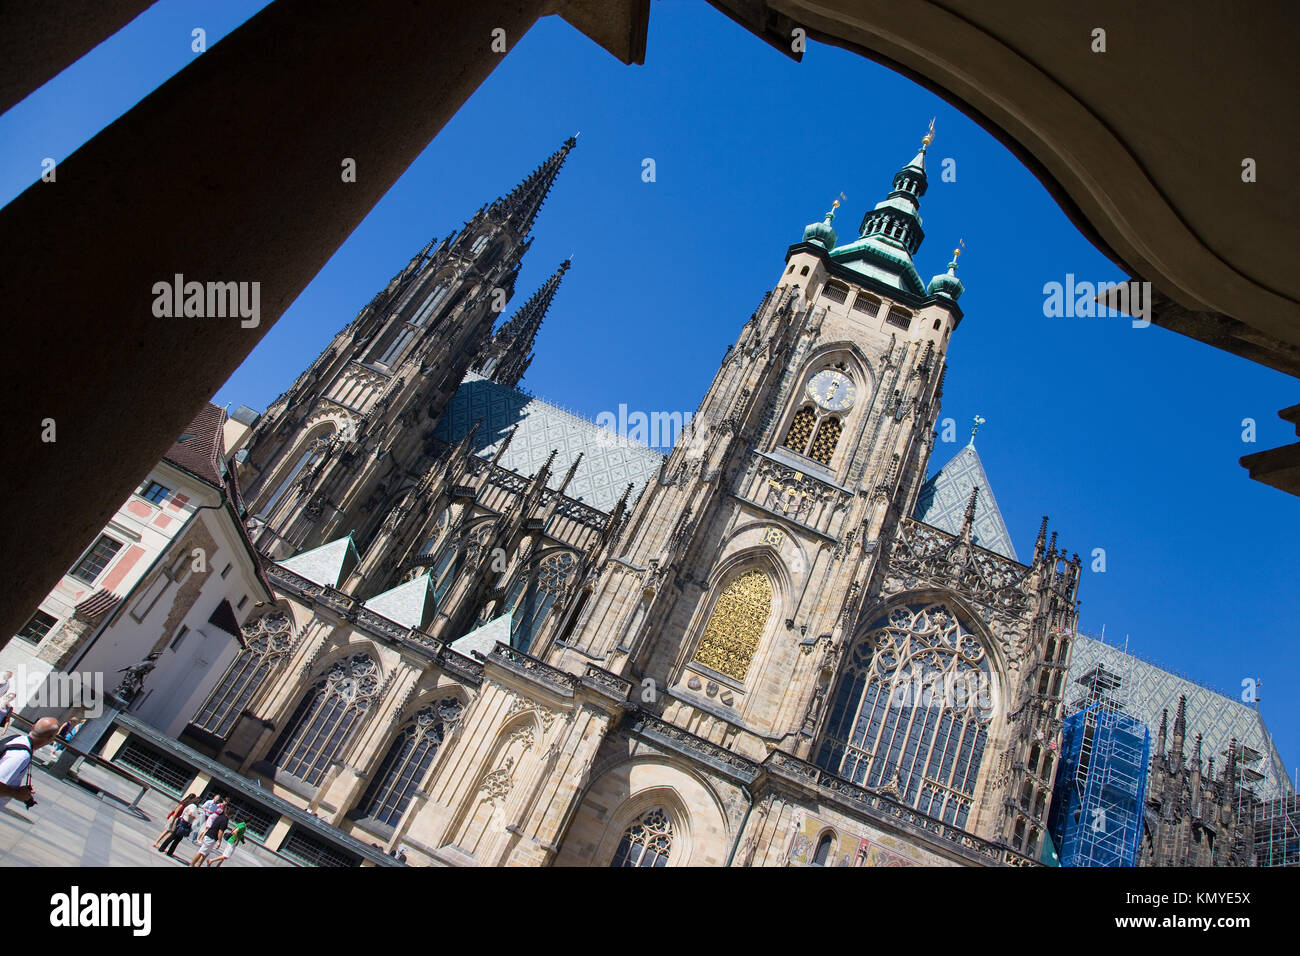 saint Vitus cathedral, Prague castle, Hradcany, UNESCO, Czech republic Stock Photo